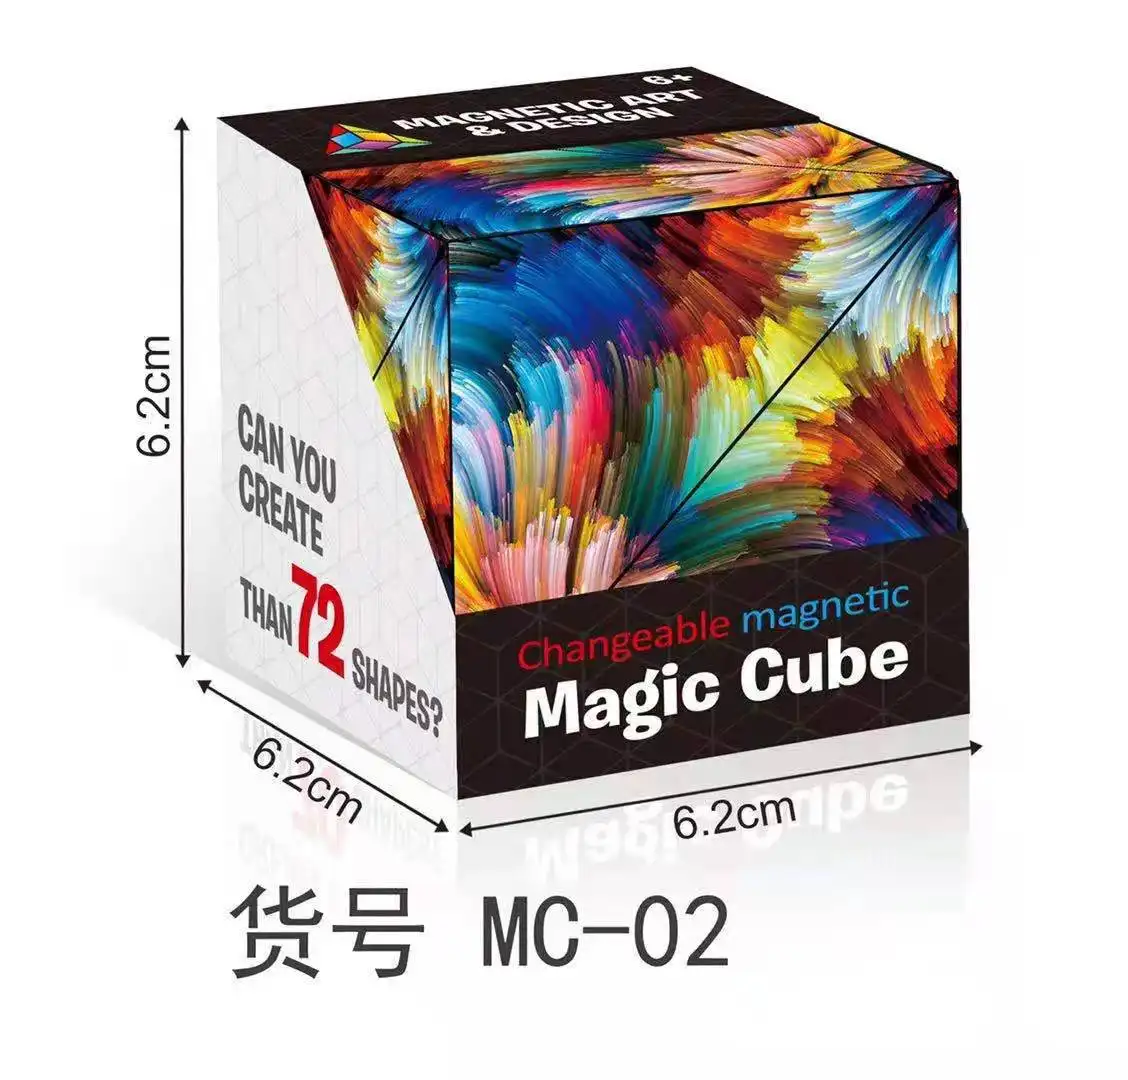 Fidget Cube 72 Shape Magic Cube Fidget Toy Puzzle Toy Educational Toy for Kids